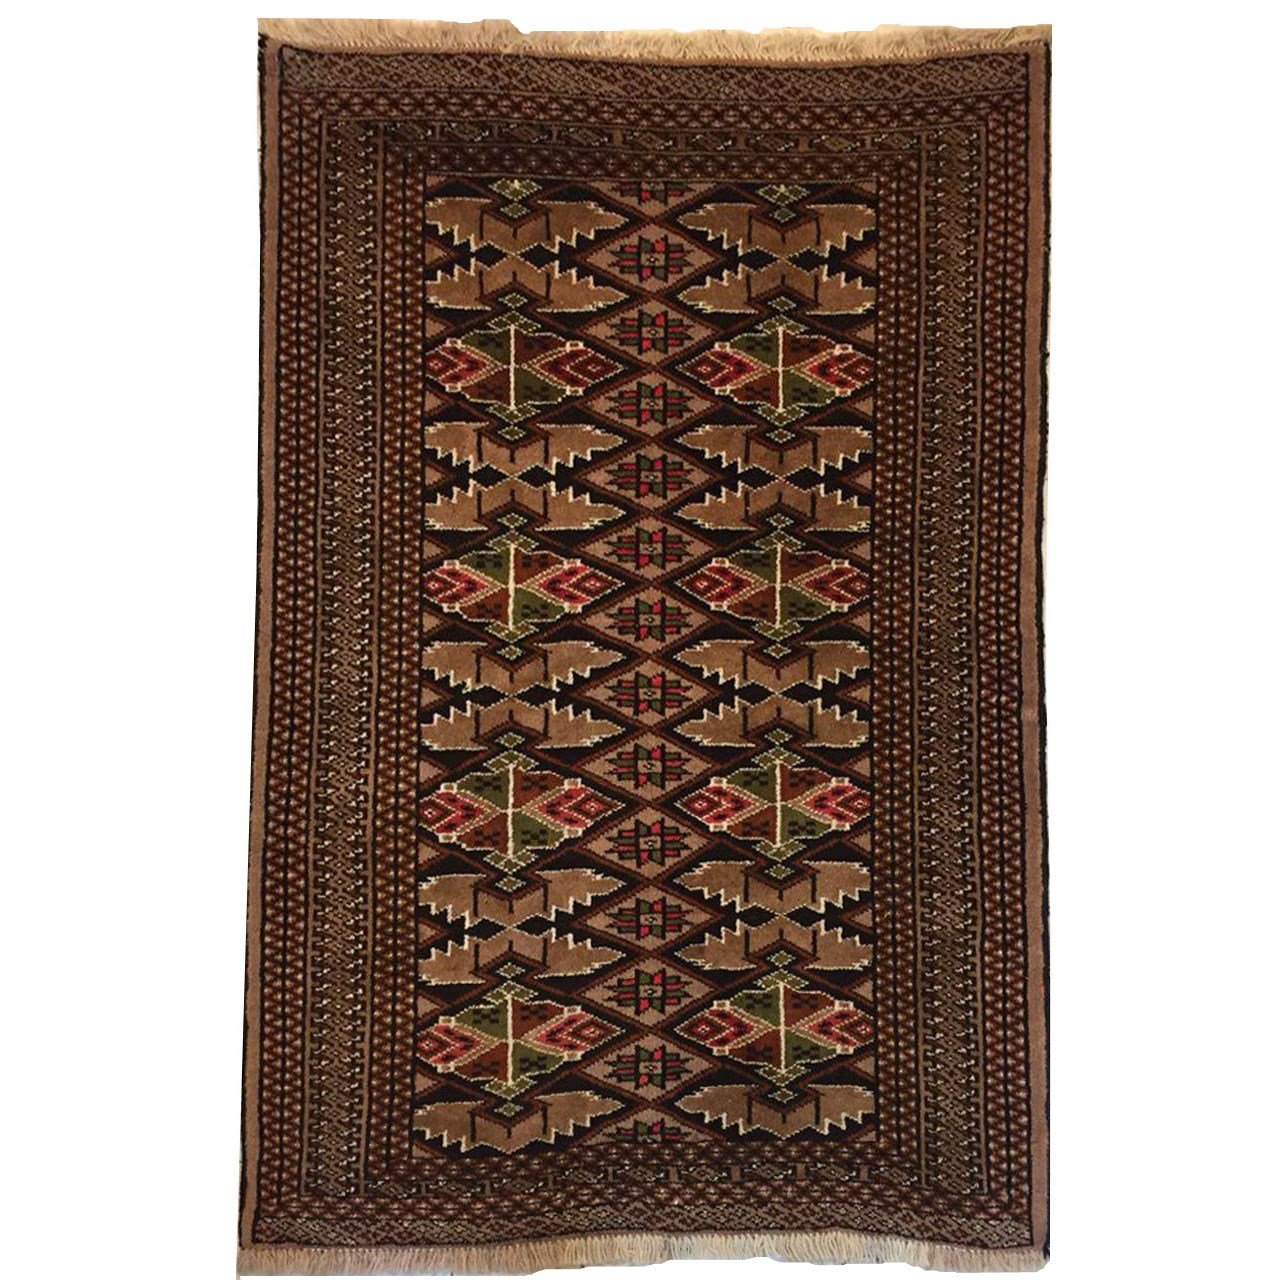 Persian Handwoven Carpet Code 9241,Persian Handwoven Carpet,Handwoven Carpet,local rug,local carpet,persian local rug,persian local carpet,iranian local rug,iranian local carpet